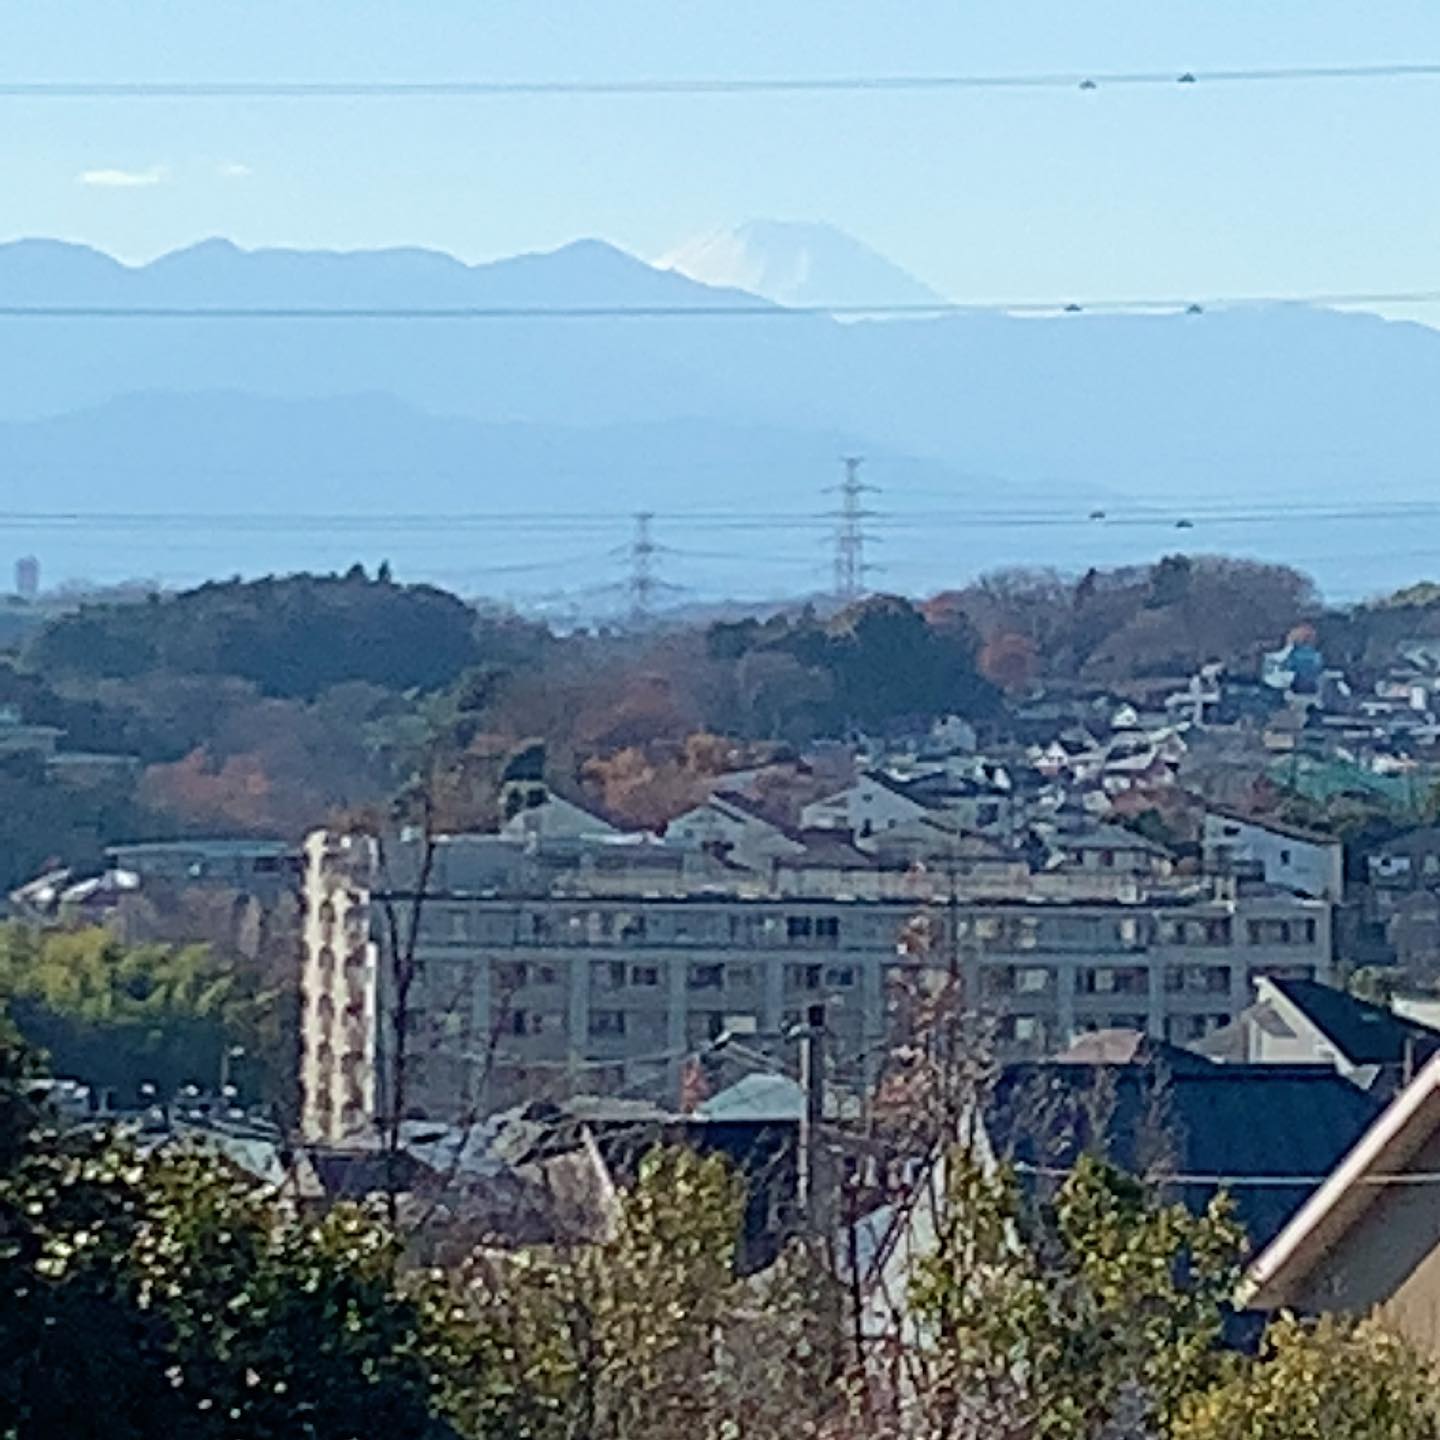 ウチから歩いて3分のところから富士山が見える。今頃気がついたー。